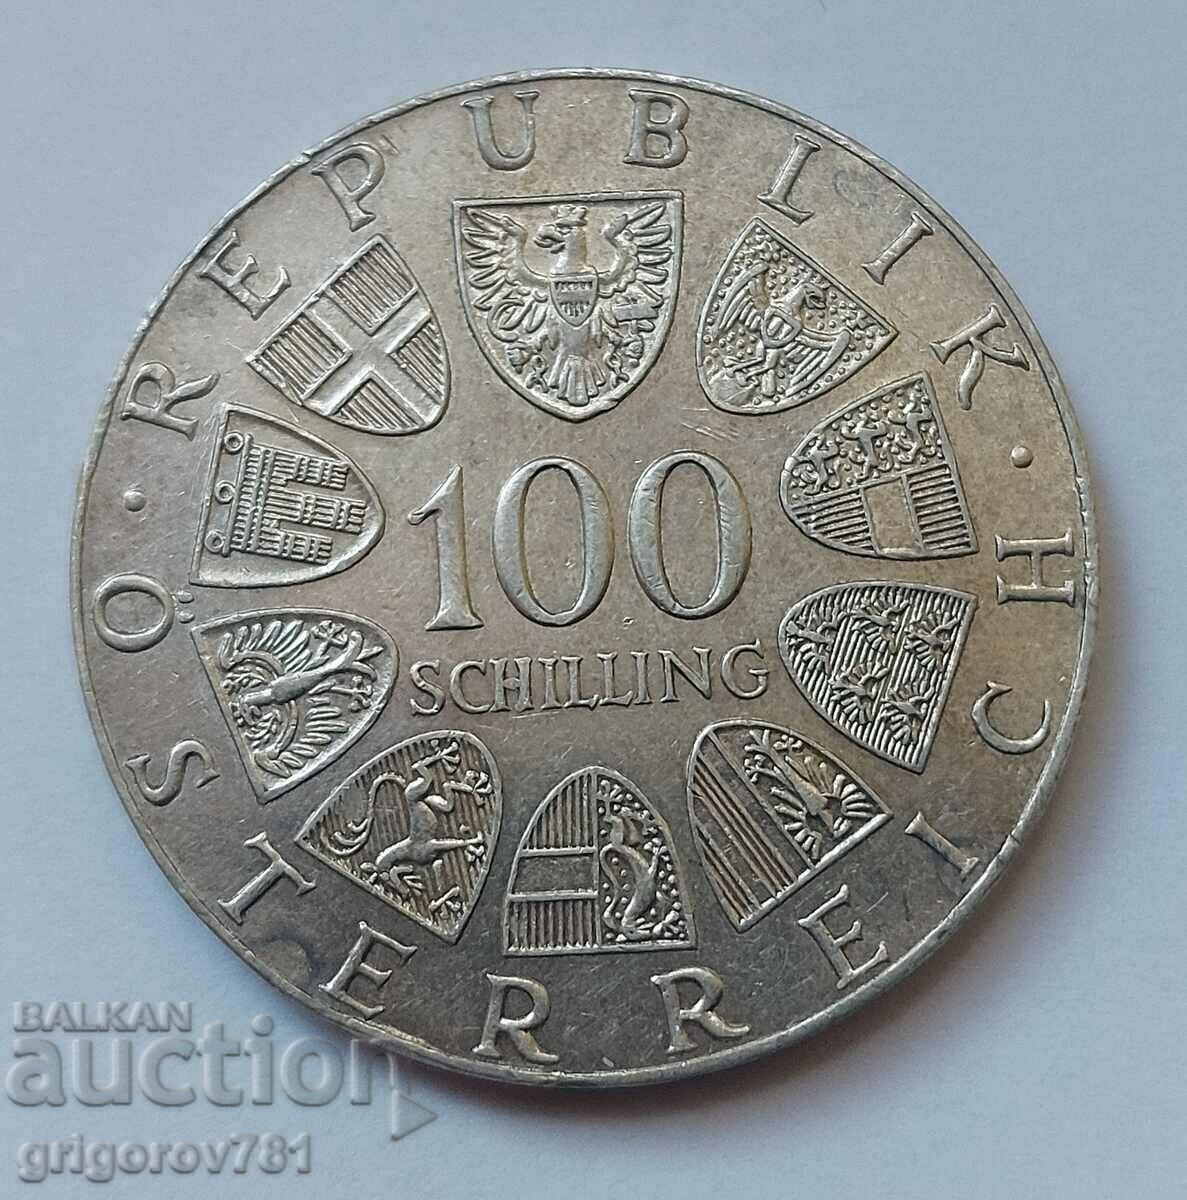 100 Shilling Silver Αυστρία 1977 - Ασημένιο νόμισμα #19